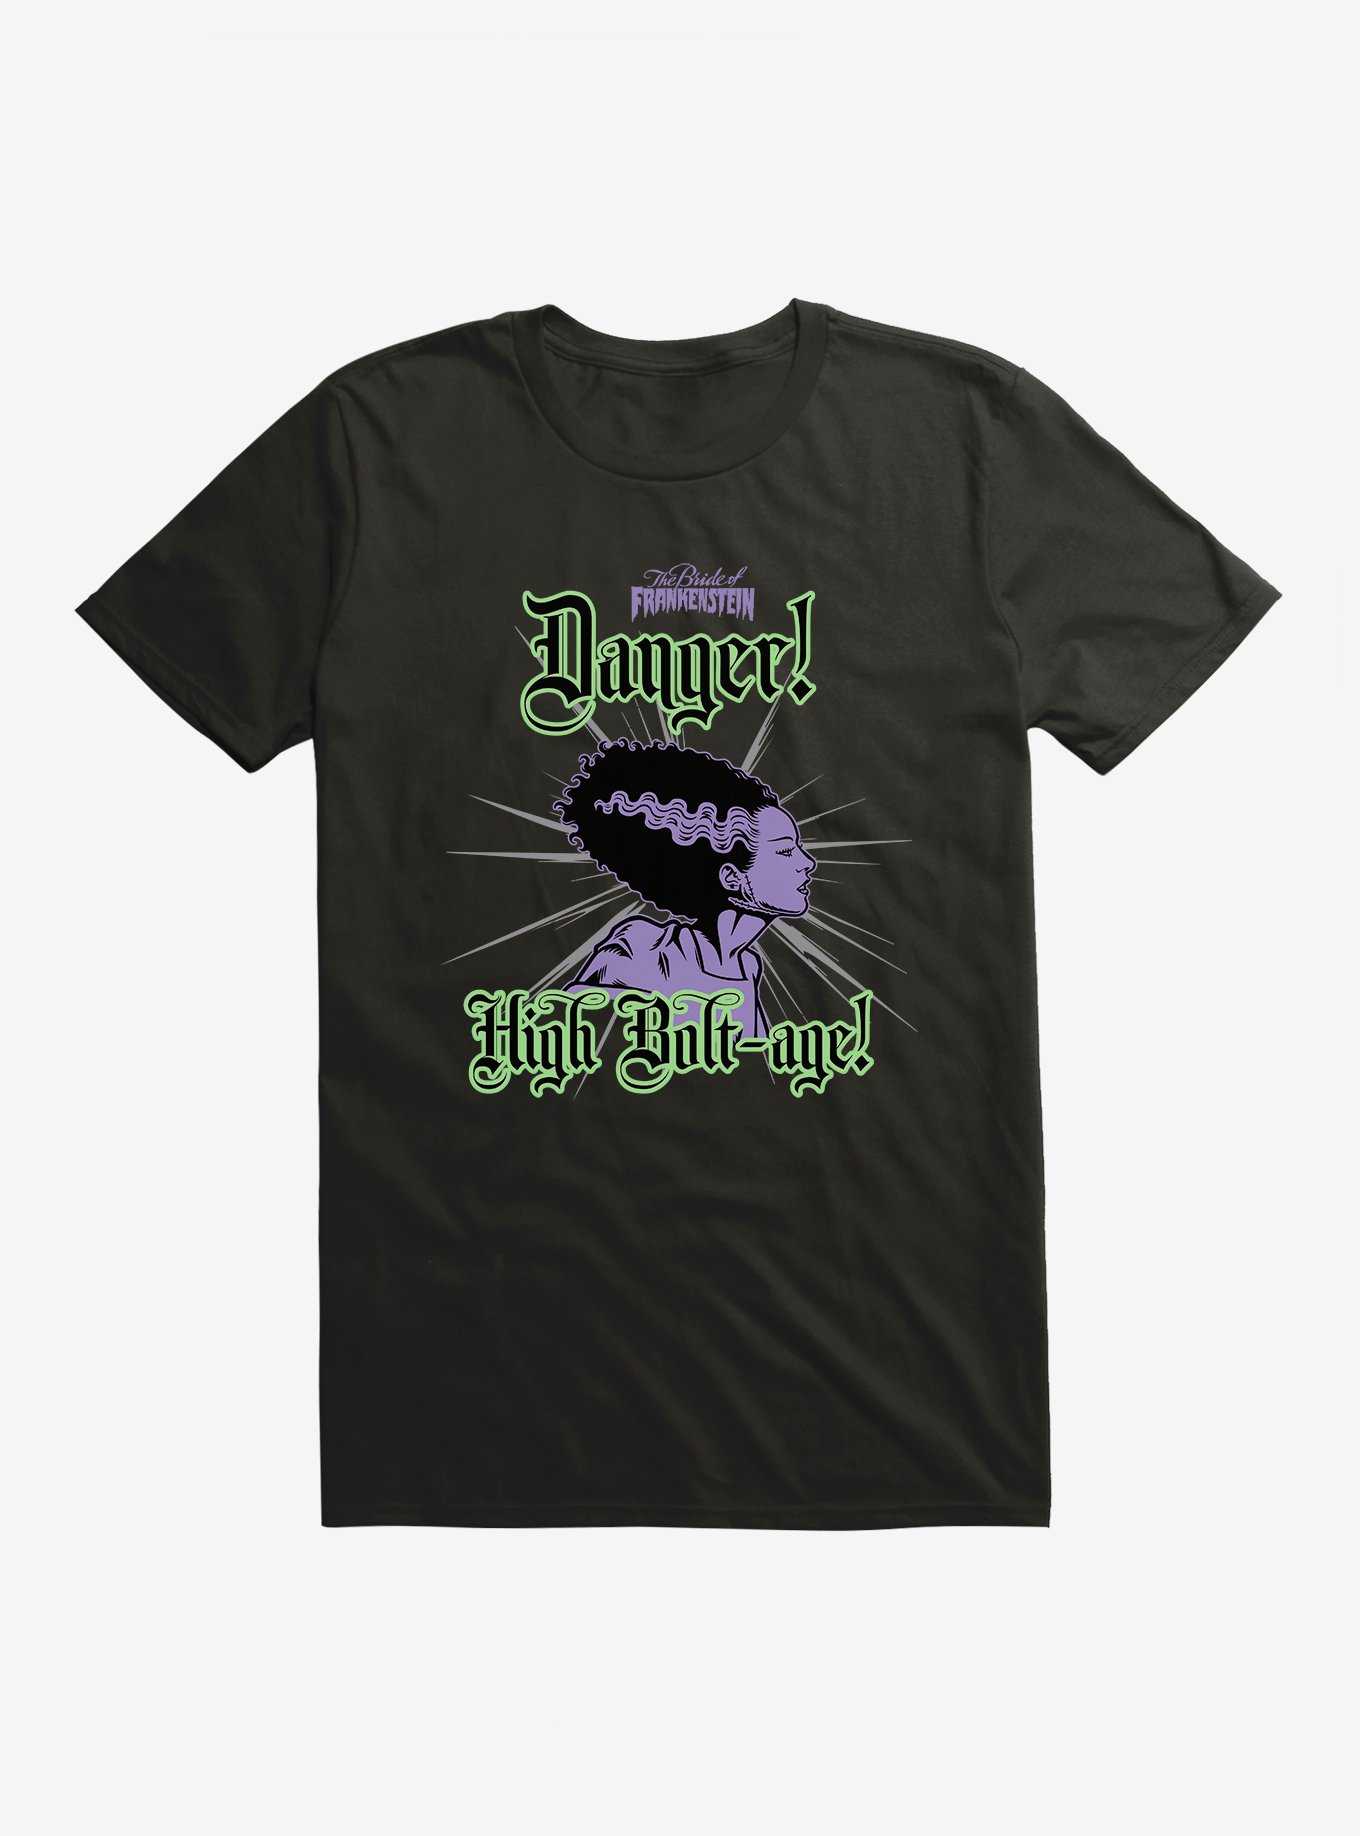 Bride Of Frankenstein Danger High Bolt-age T-Shirt, , hi-res